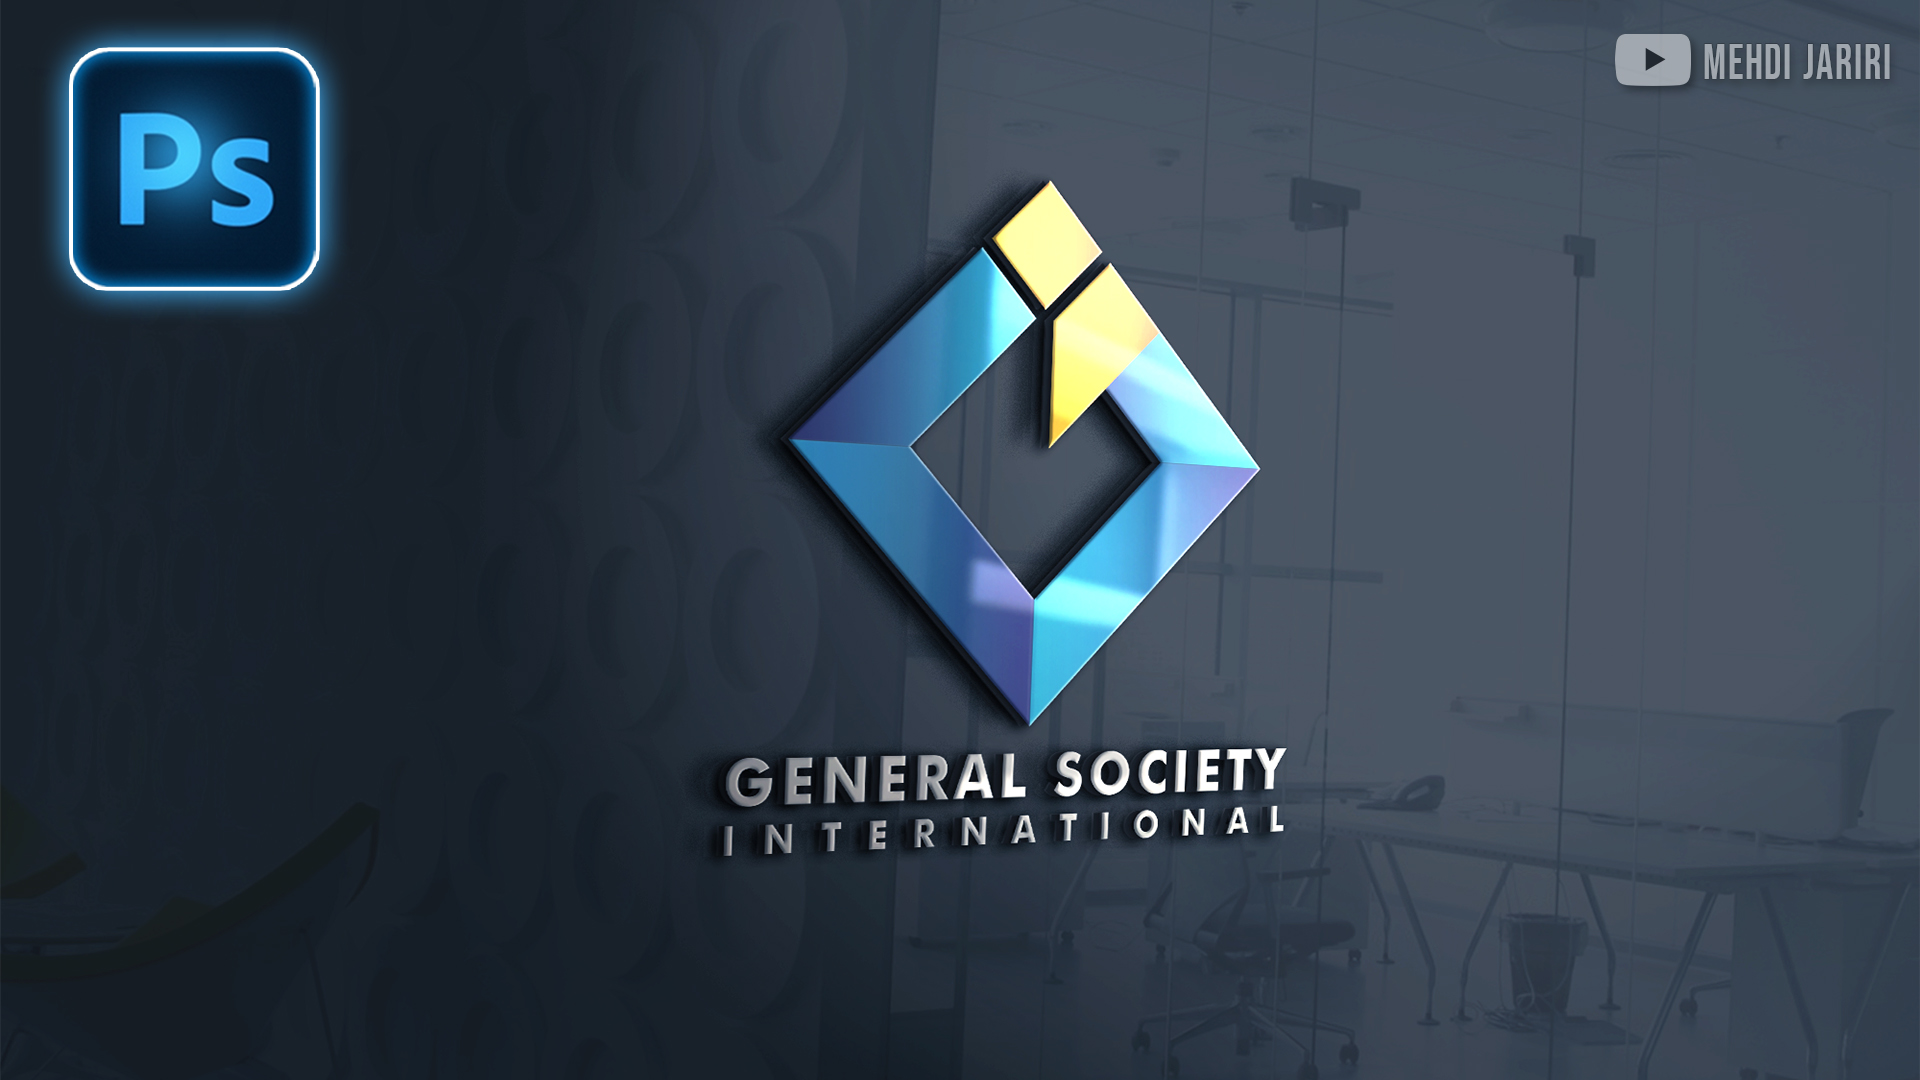 General Logo Design Photoshop | تصميم لوجو احترافي في الفوتوشوب